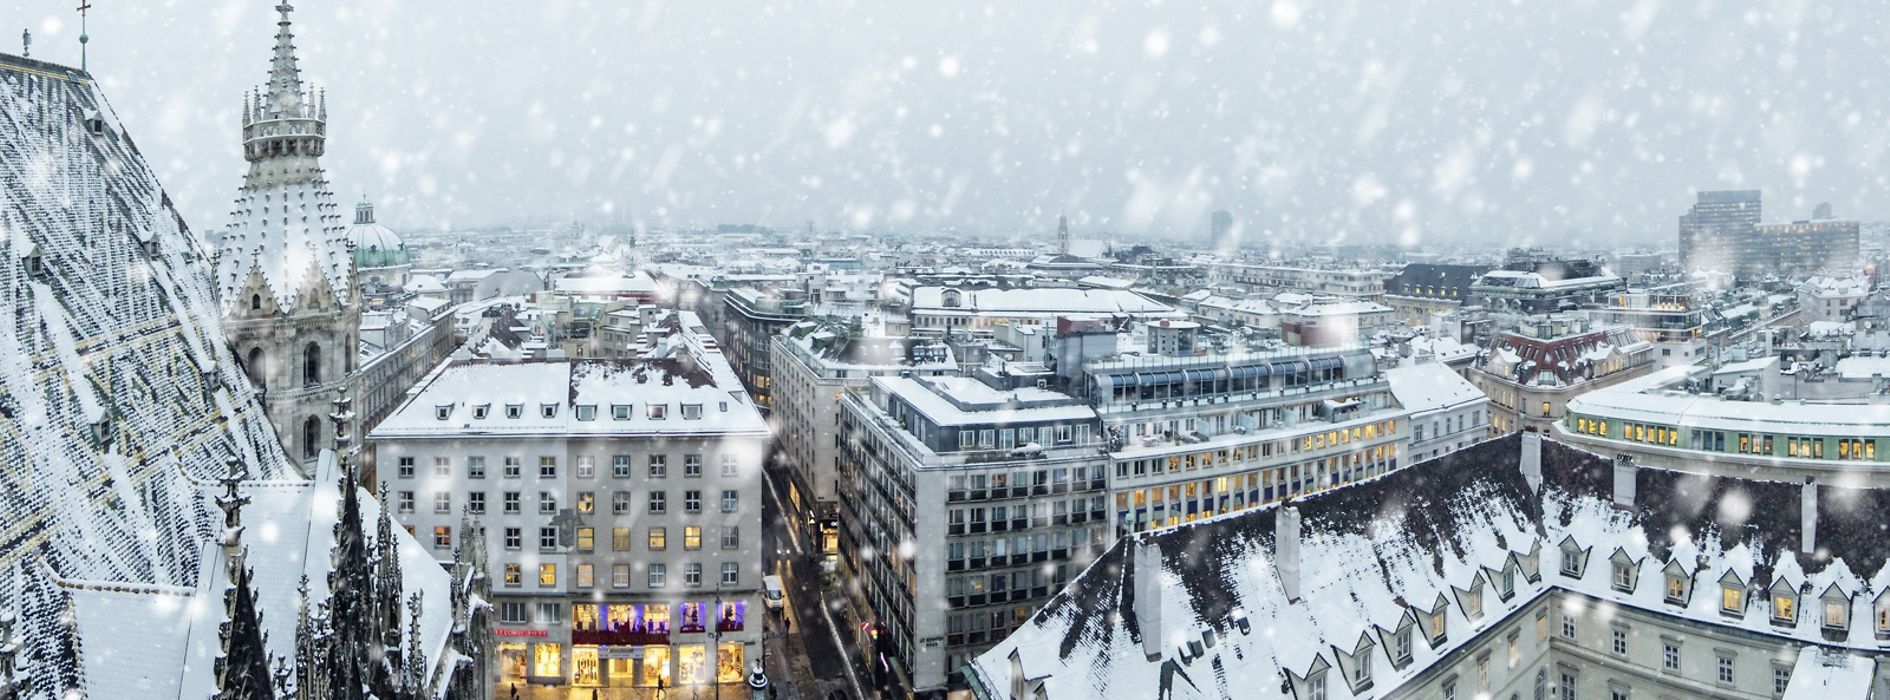 Blick vom Stephansdom im Winter